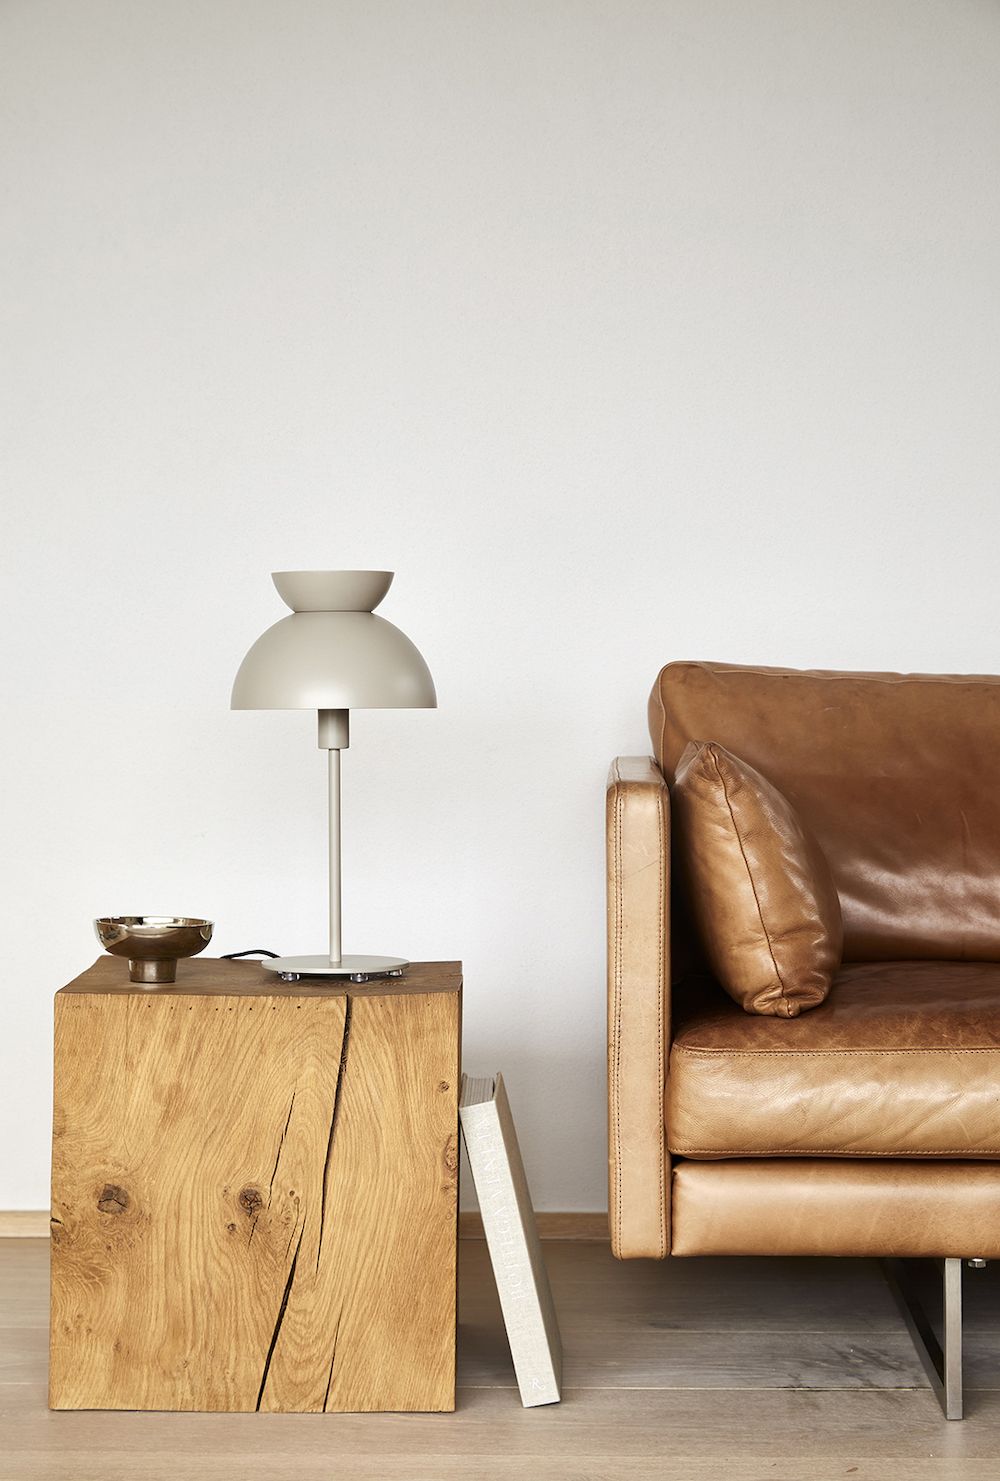 Lampa stołowa na drewnianym stoliku obok kanapy brązowej